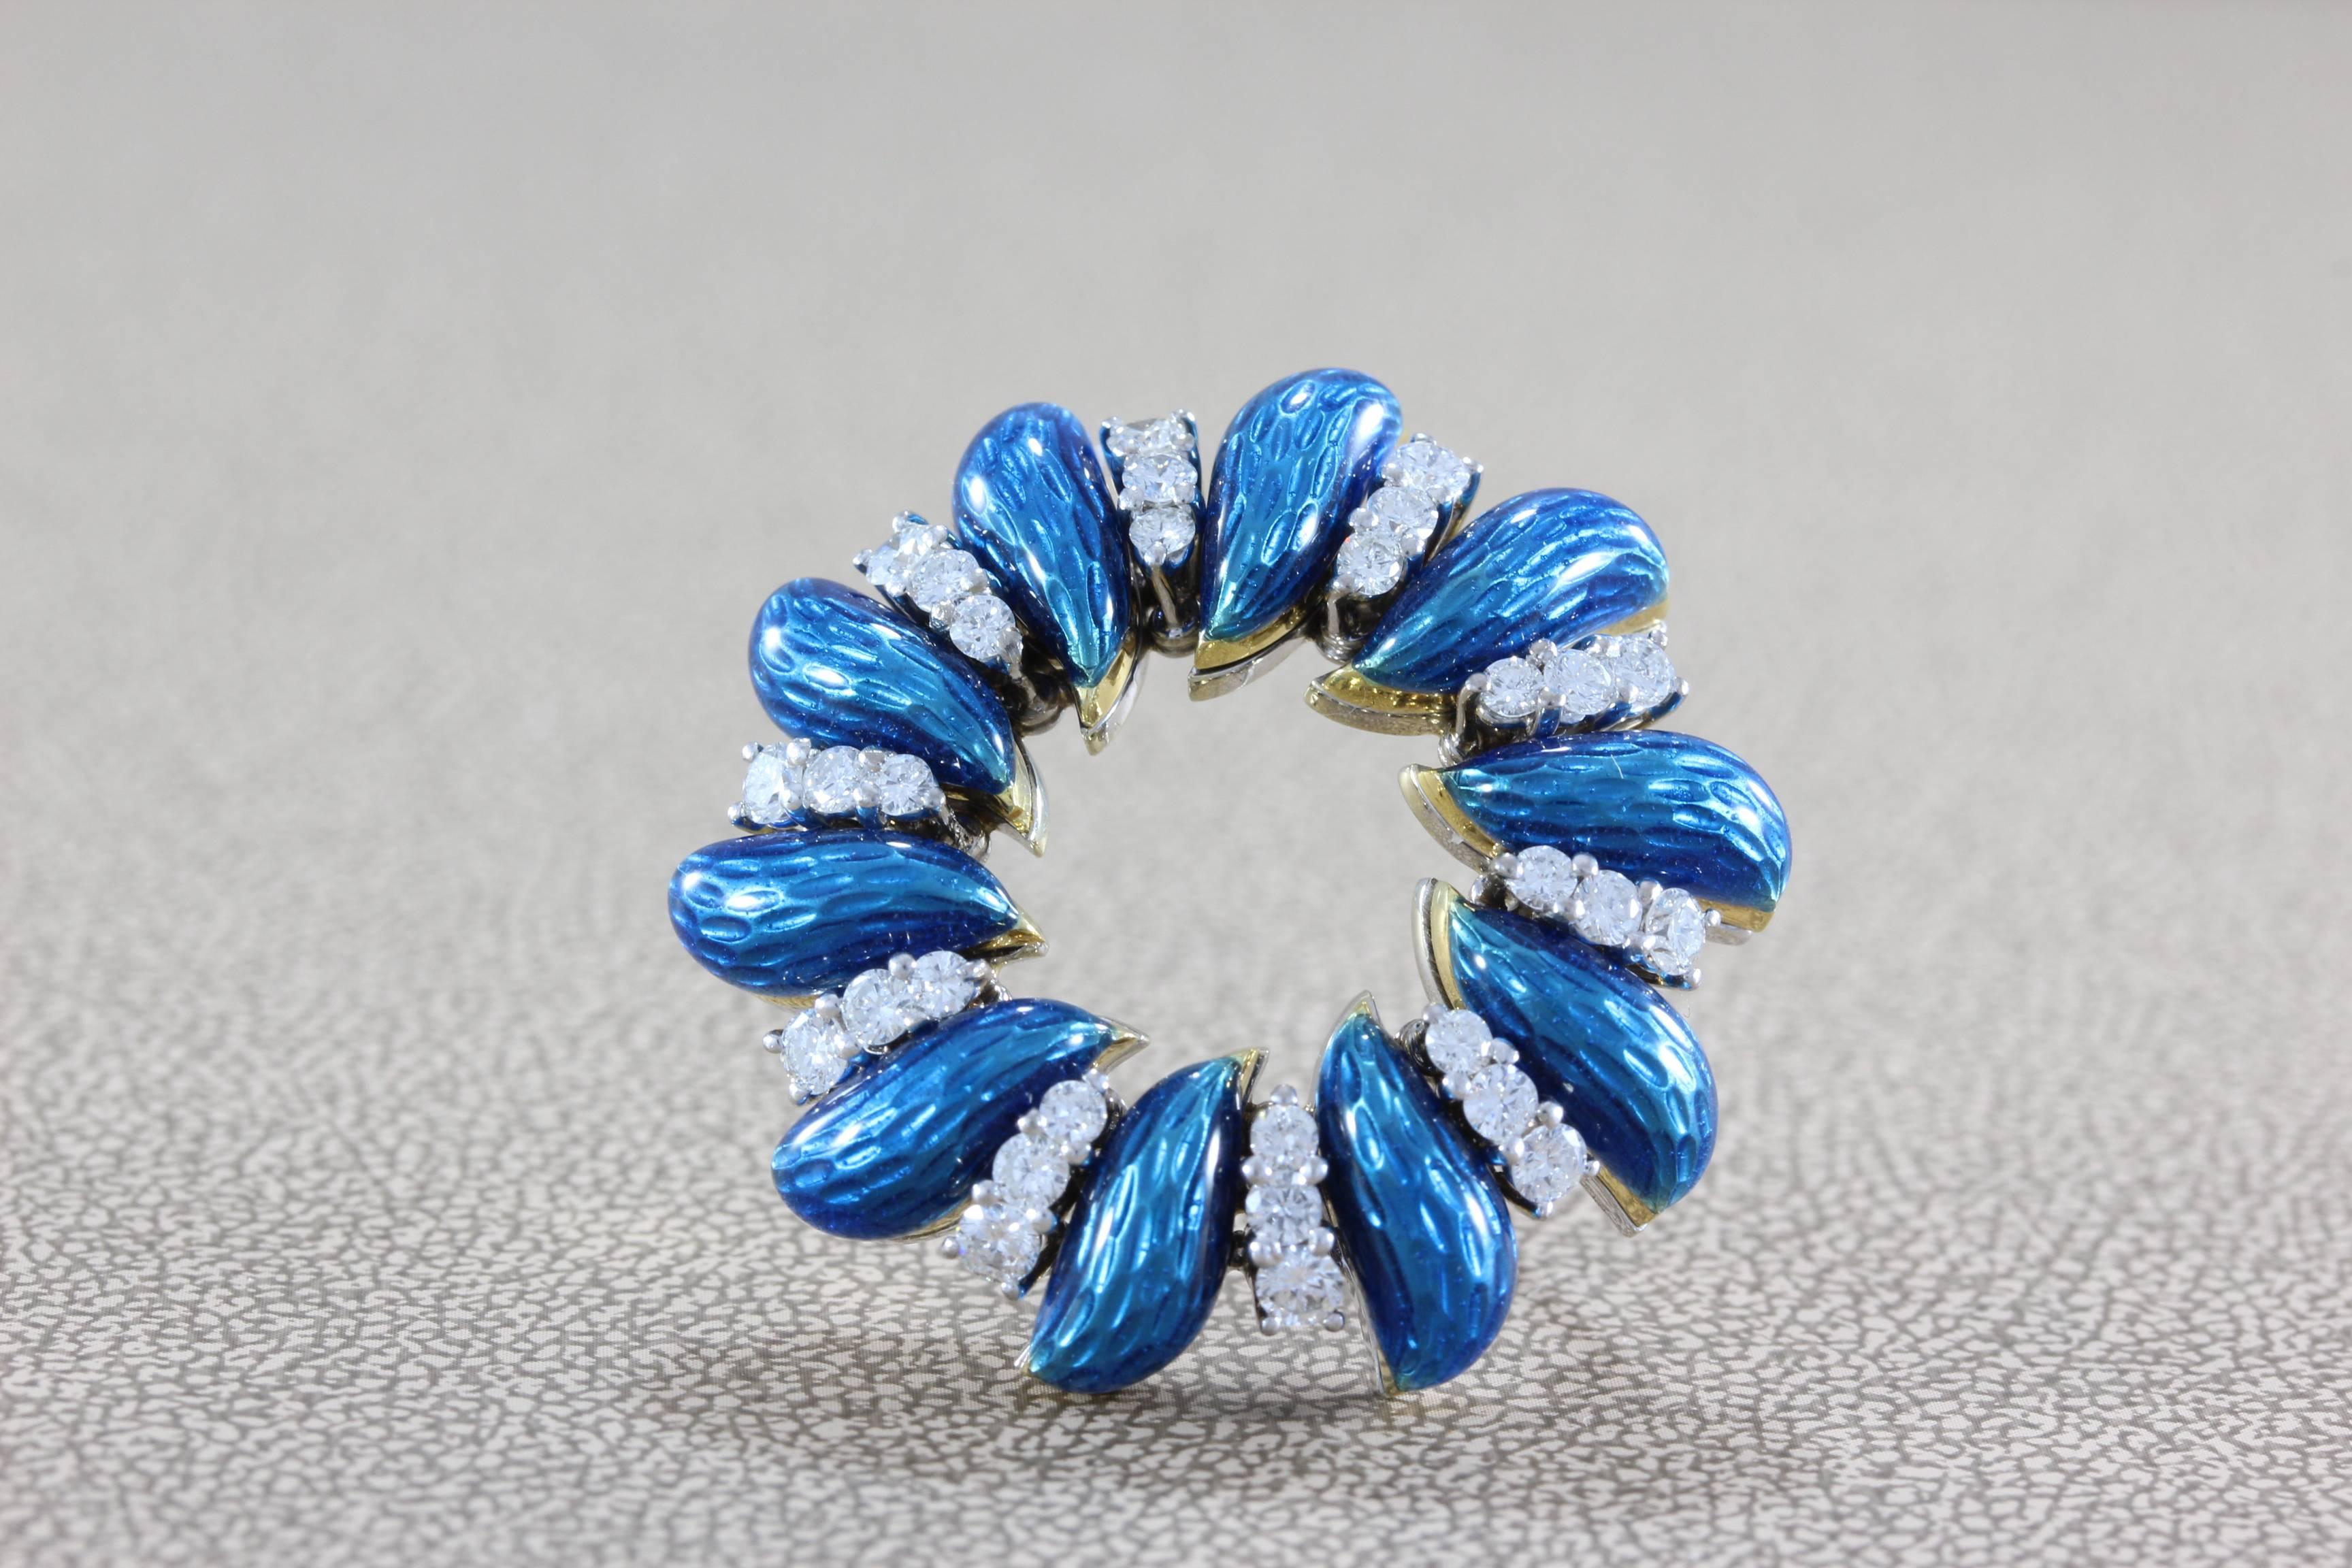 Pièce classique de Tiffany & Company, cette broche en forme de couronne présente 30 diamants pleine taille de qualité VVS, d'environ 1,25 carat, accentués par un émail bleu vif. La couronne est réalisée en or blanc 18 carats et signée Tiffany & Co